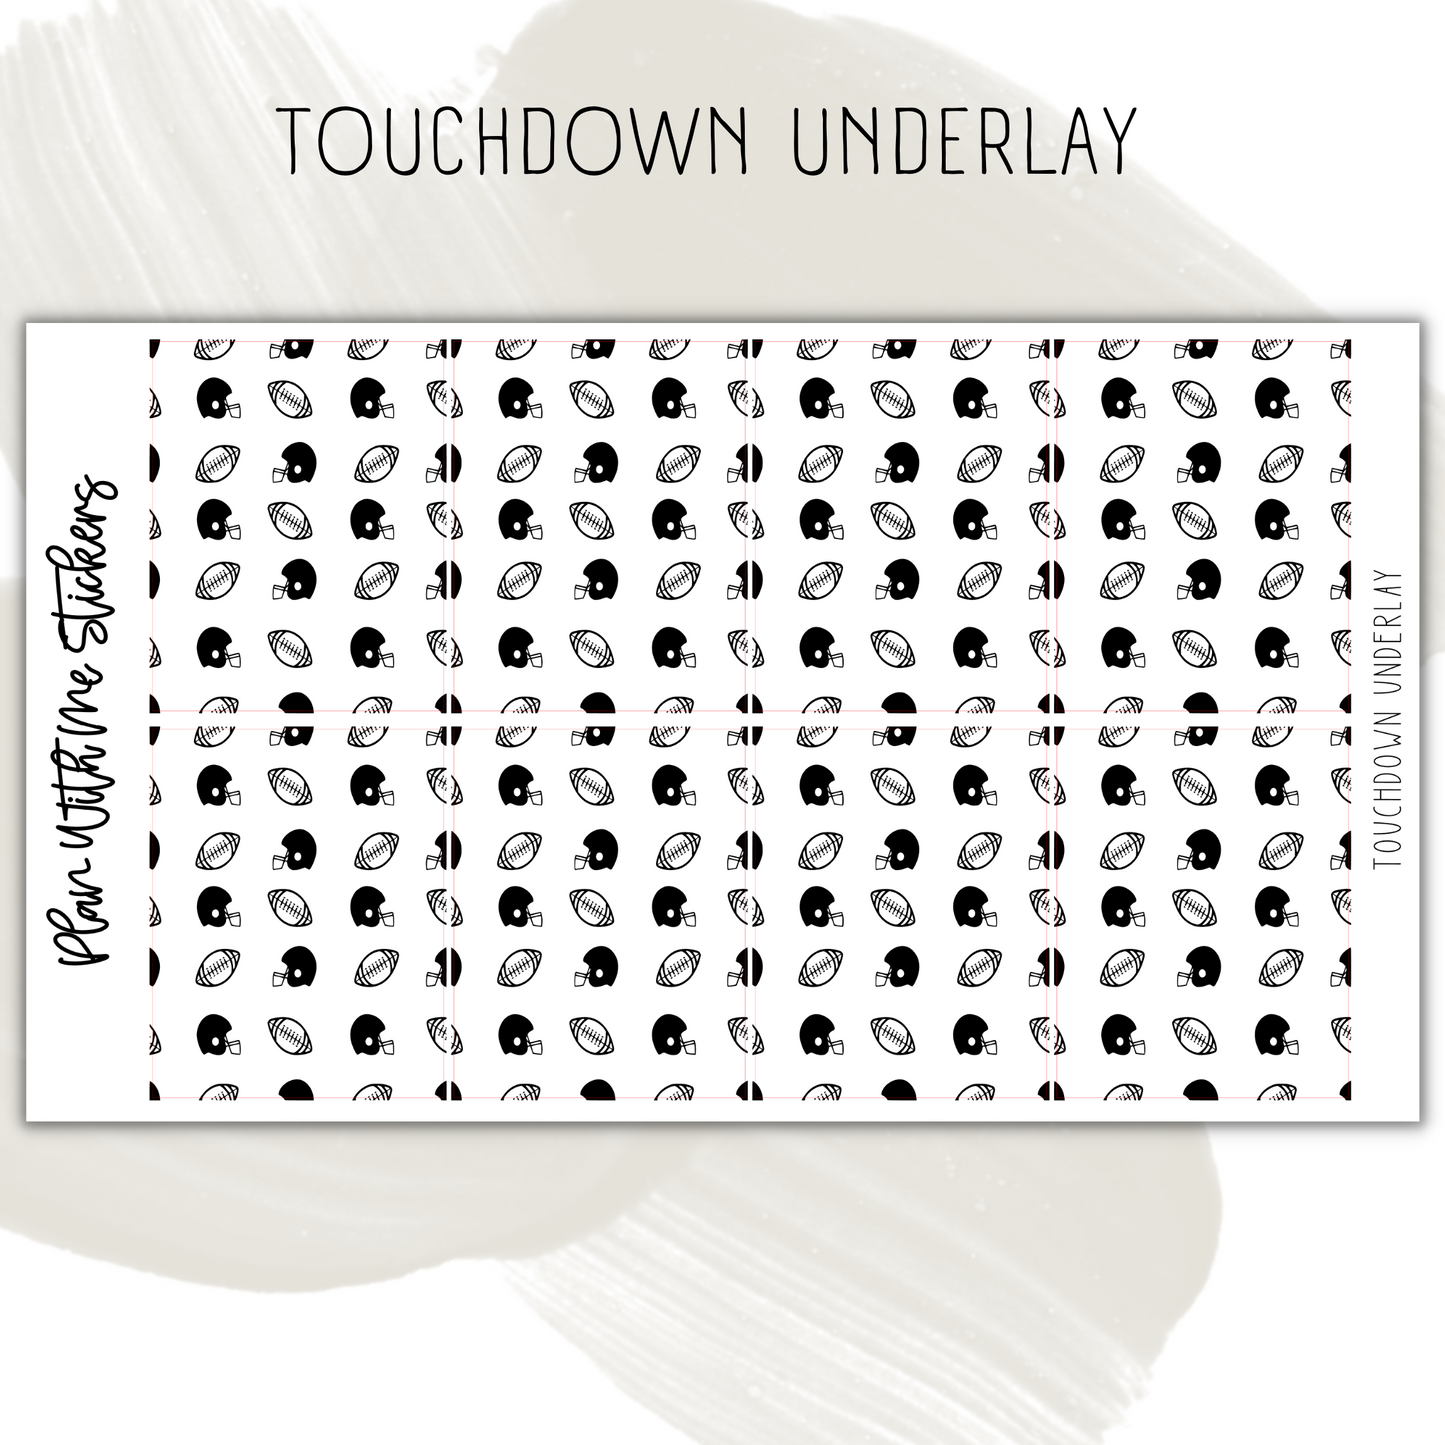 Touchdown Underlay